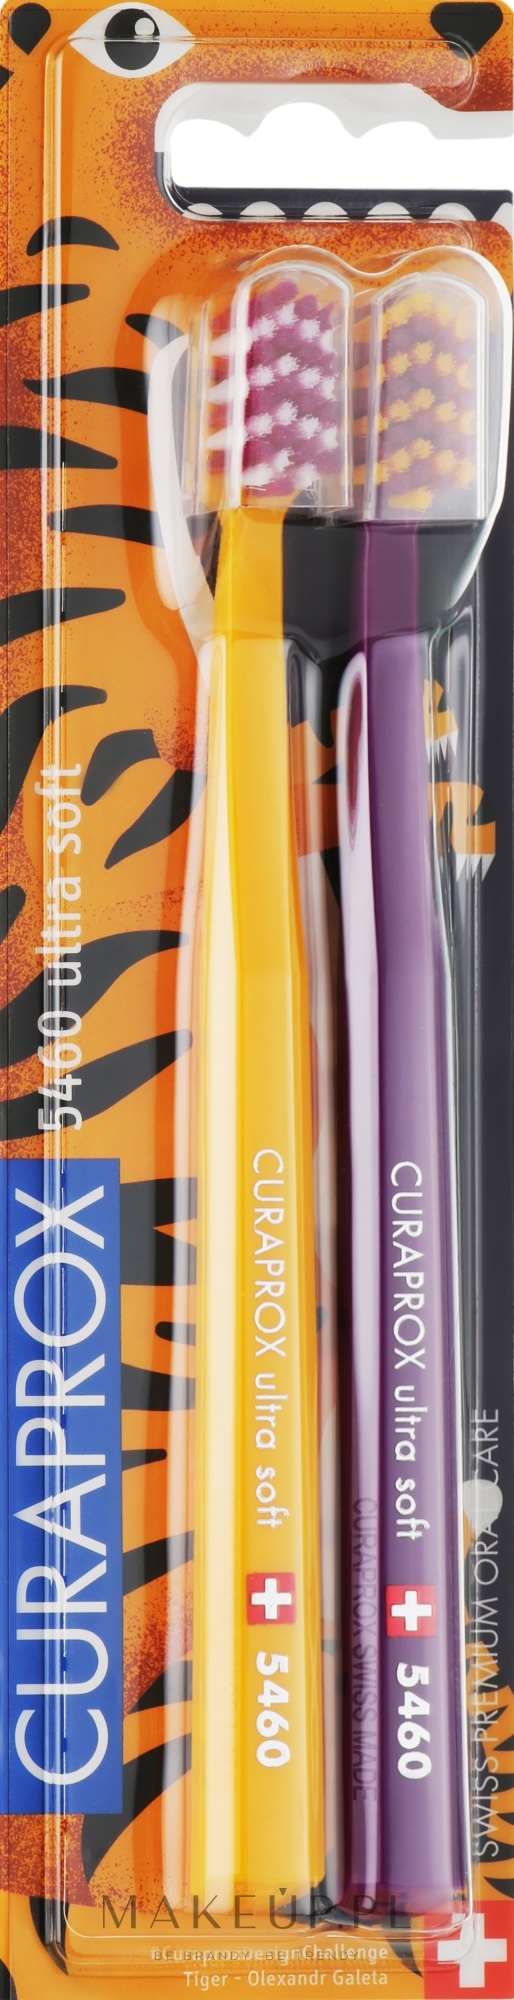 Zestaw szczoteczek do zębów Tiger Edition, 2 szt , żółta + fioletowa - Curaprox Ultra Soft CS 5460 — Zdjęcie 2 szt.